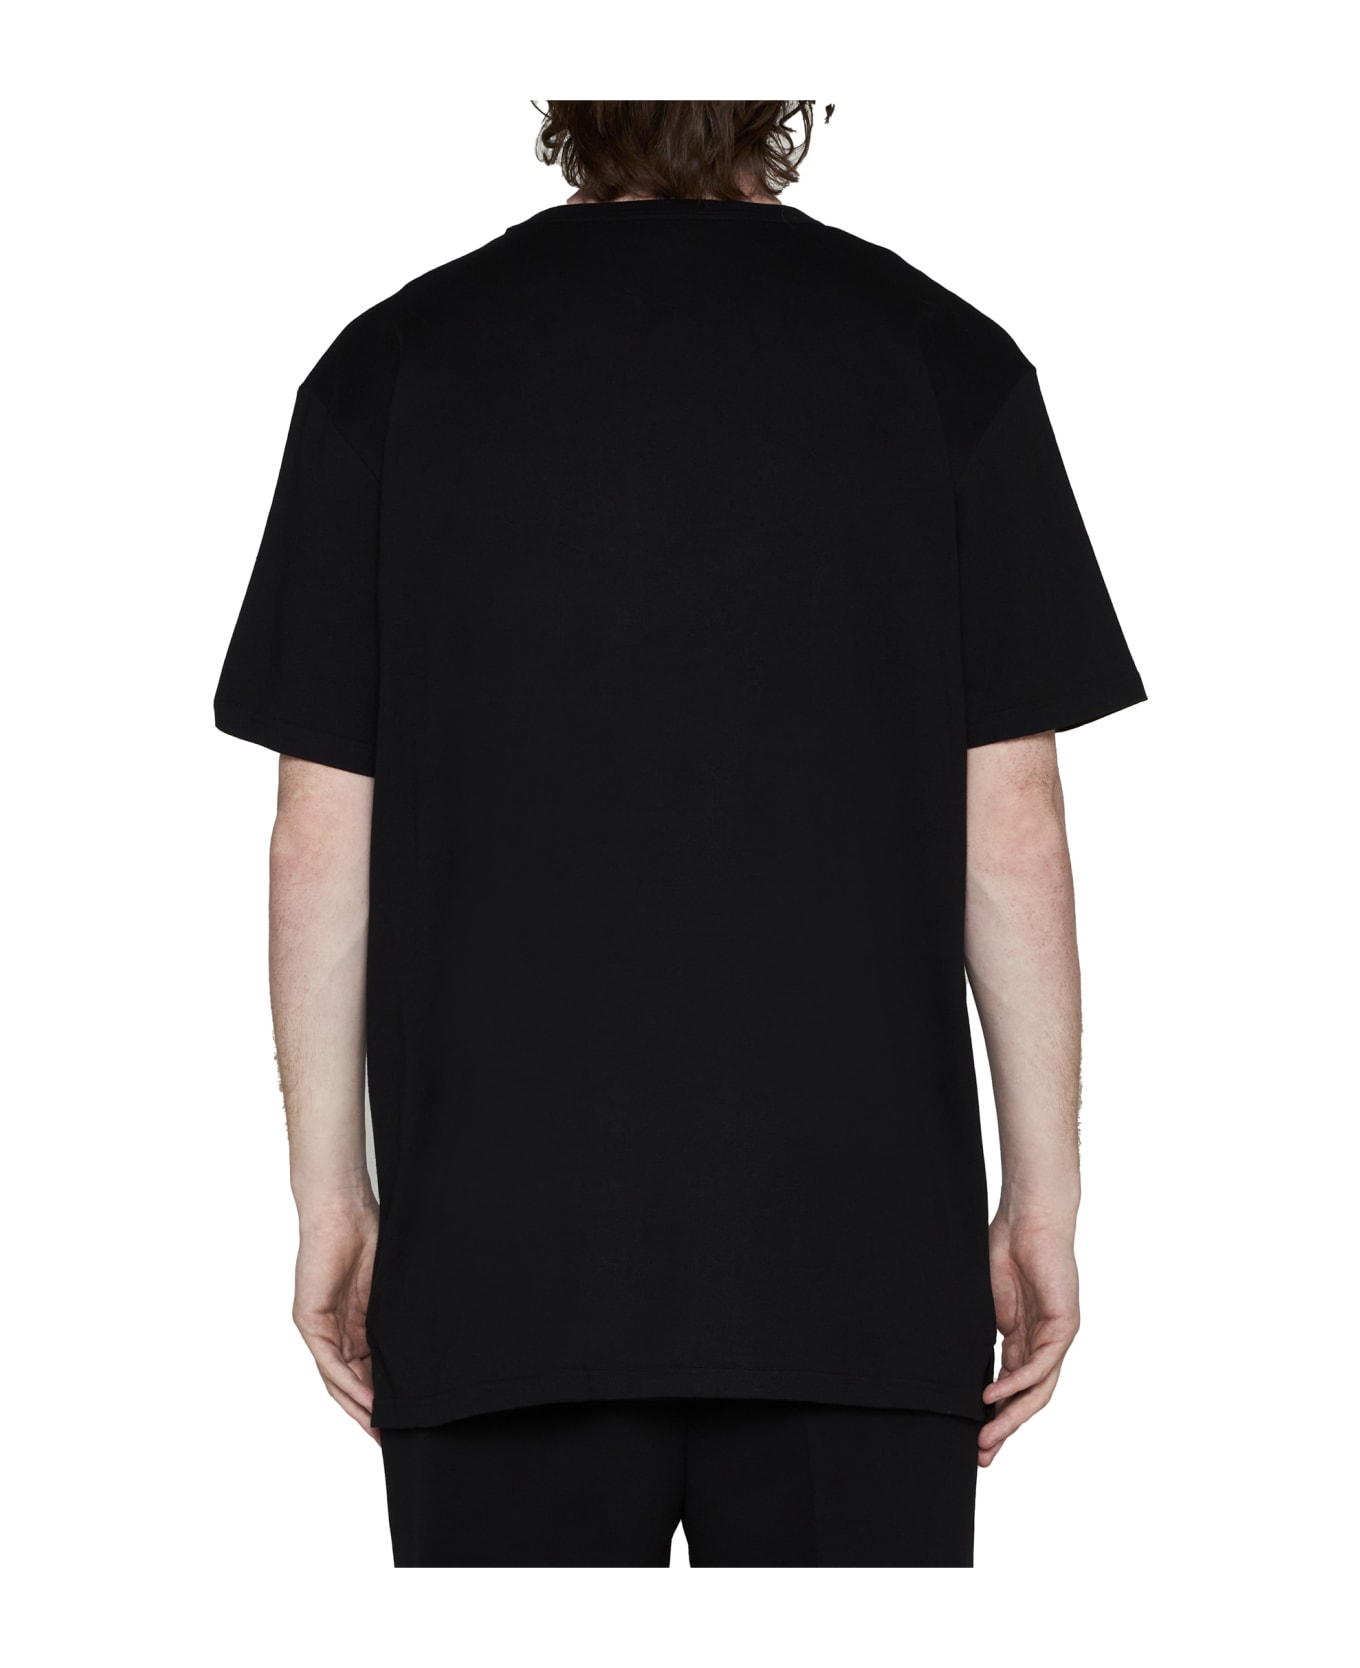 Alexander McQueen T-Shirt - Black mix